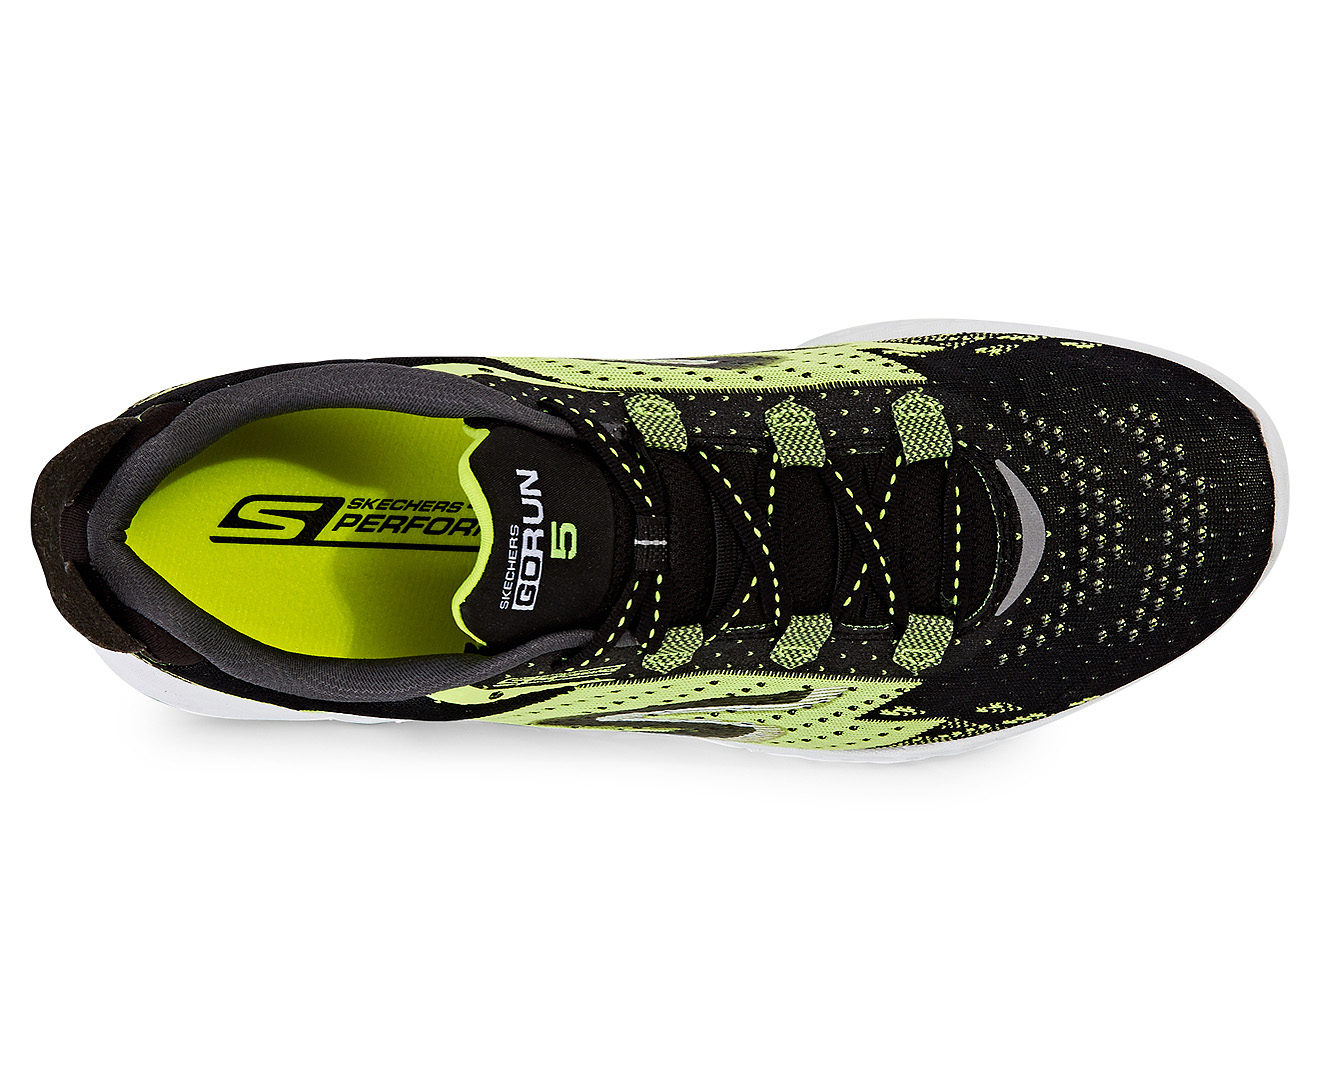 Skechers Men's GOrun 5 Shoe - Black/Green | Catch.co.nz